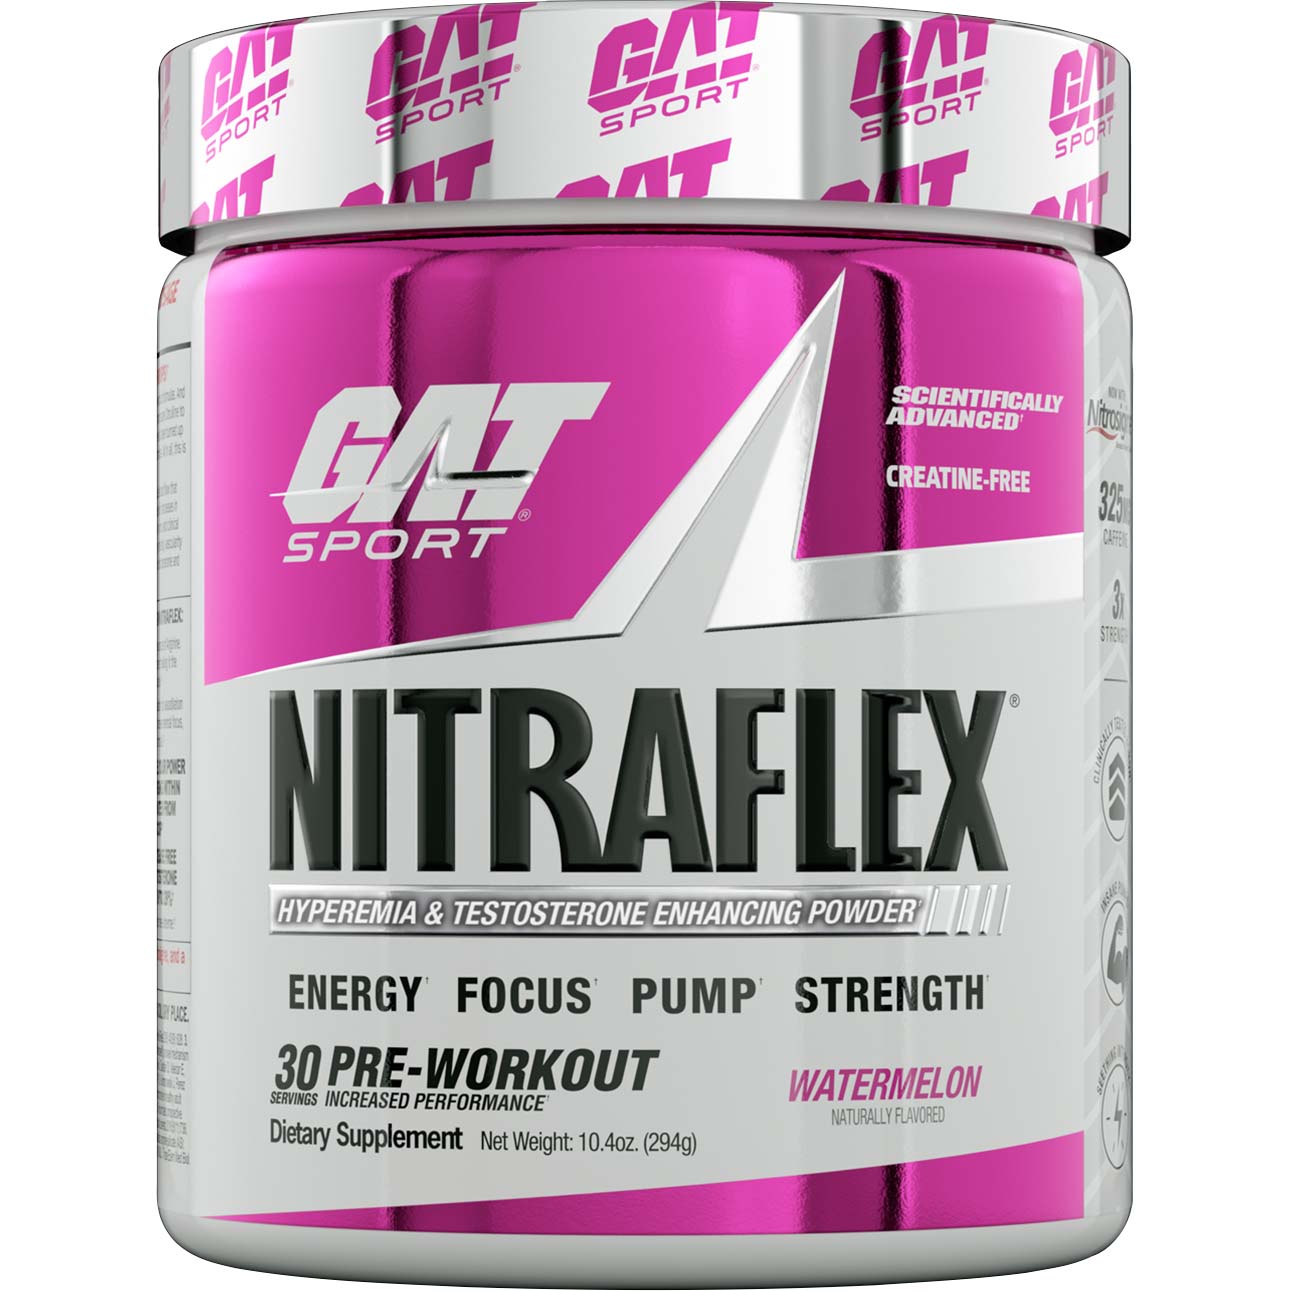 Gat Sport Nitraflex Testosterone Boosting Powder, Watermelon, 30